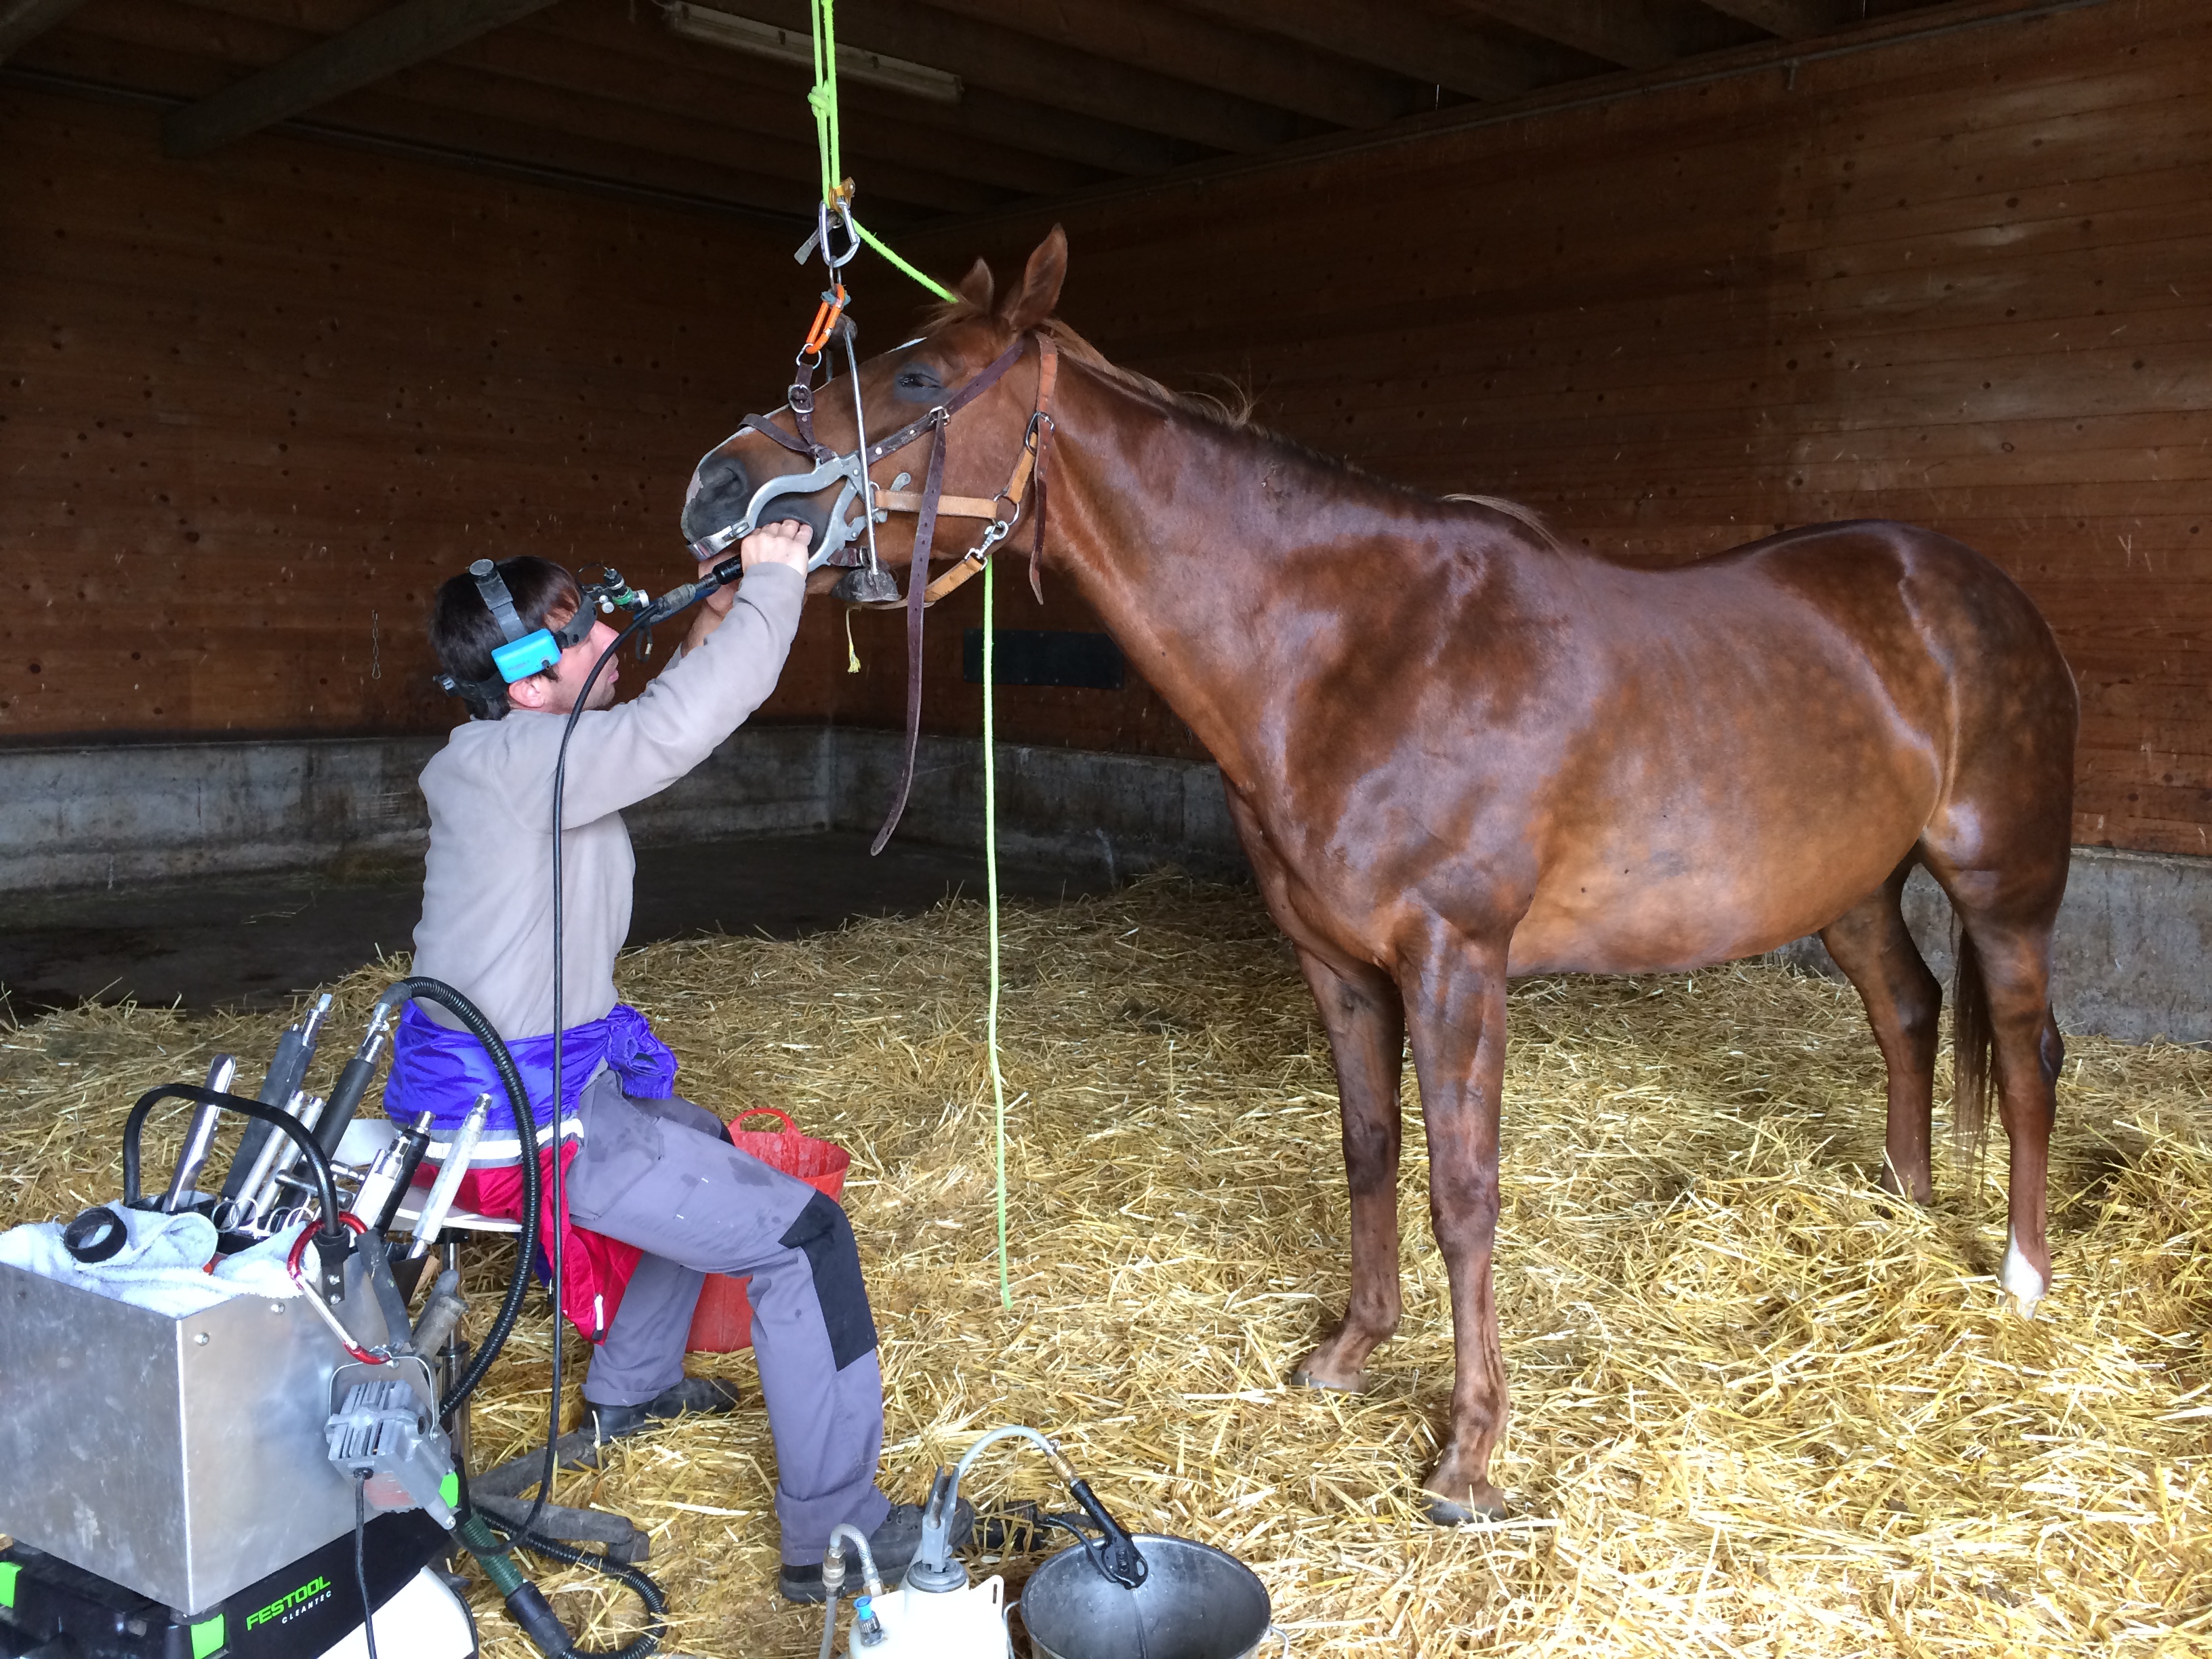 Pferdezahnarzt während der Behandlung